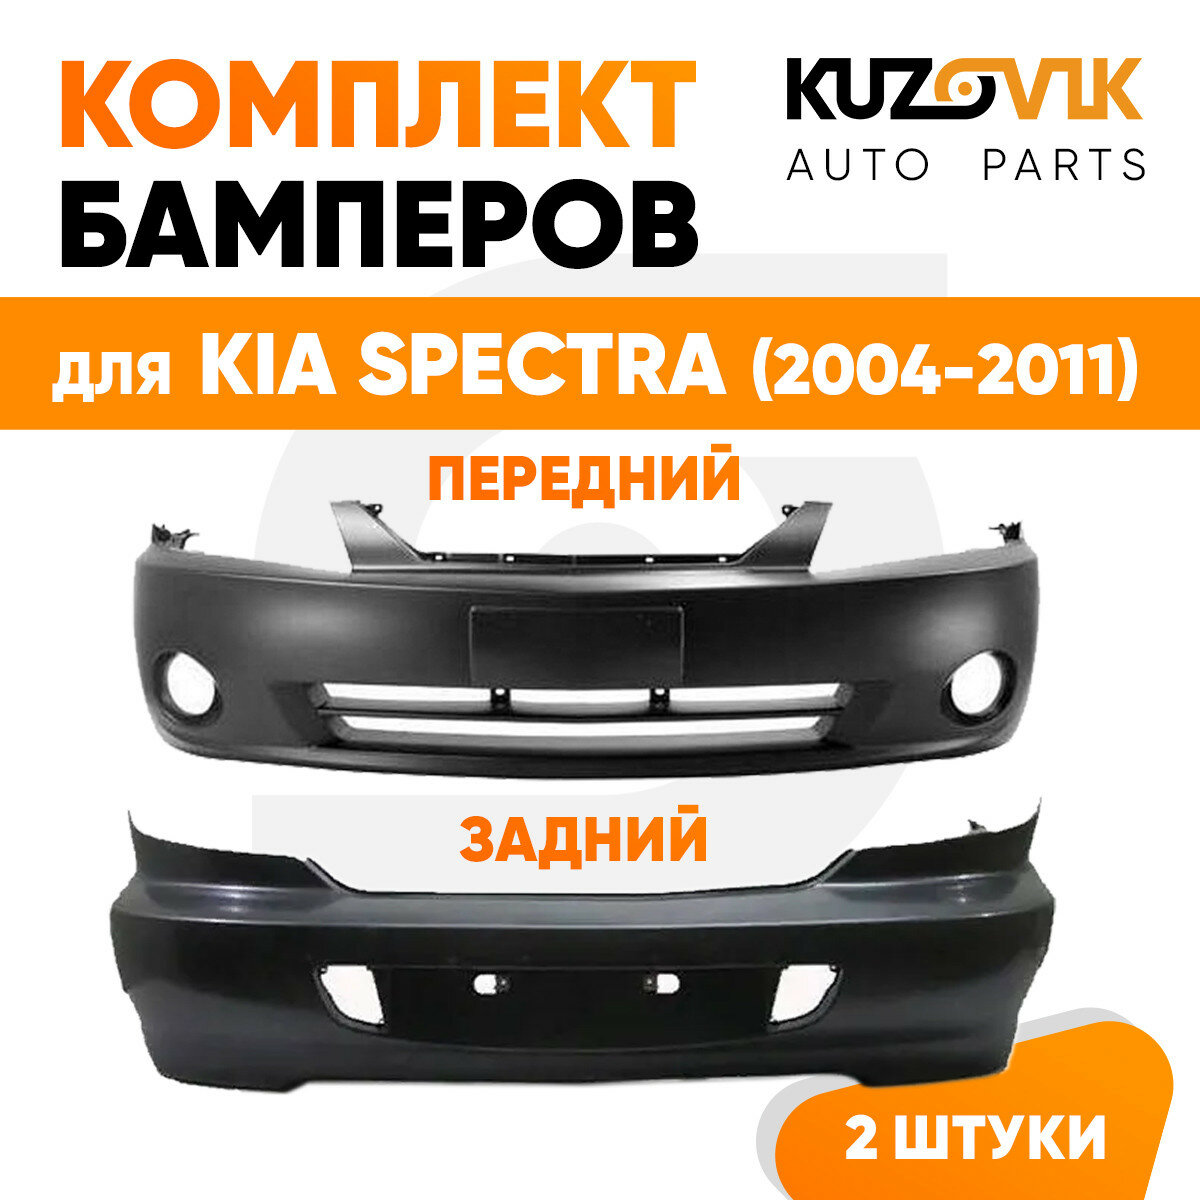 Бампера комплект передний и задний Kia Spectra (2004-2011)